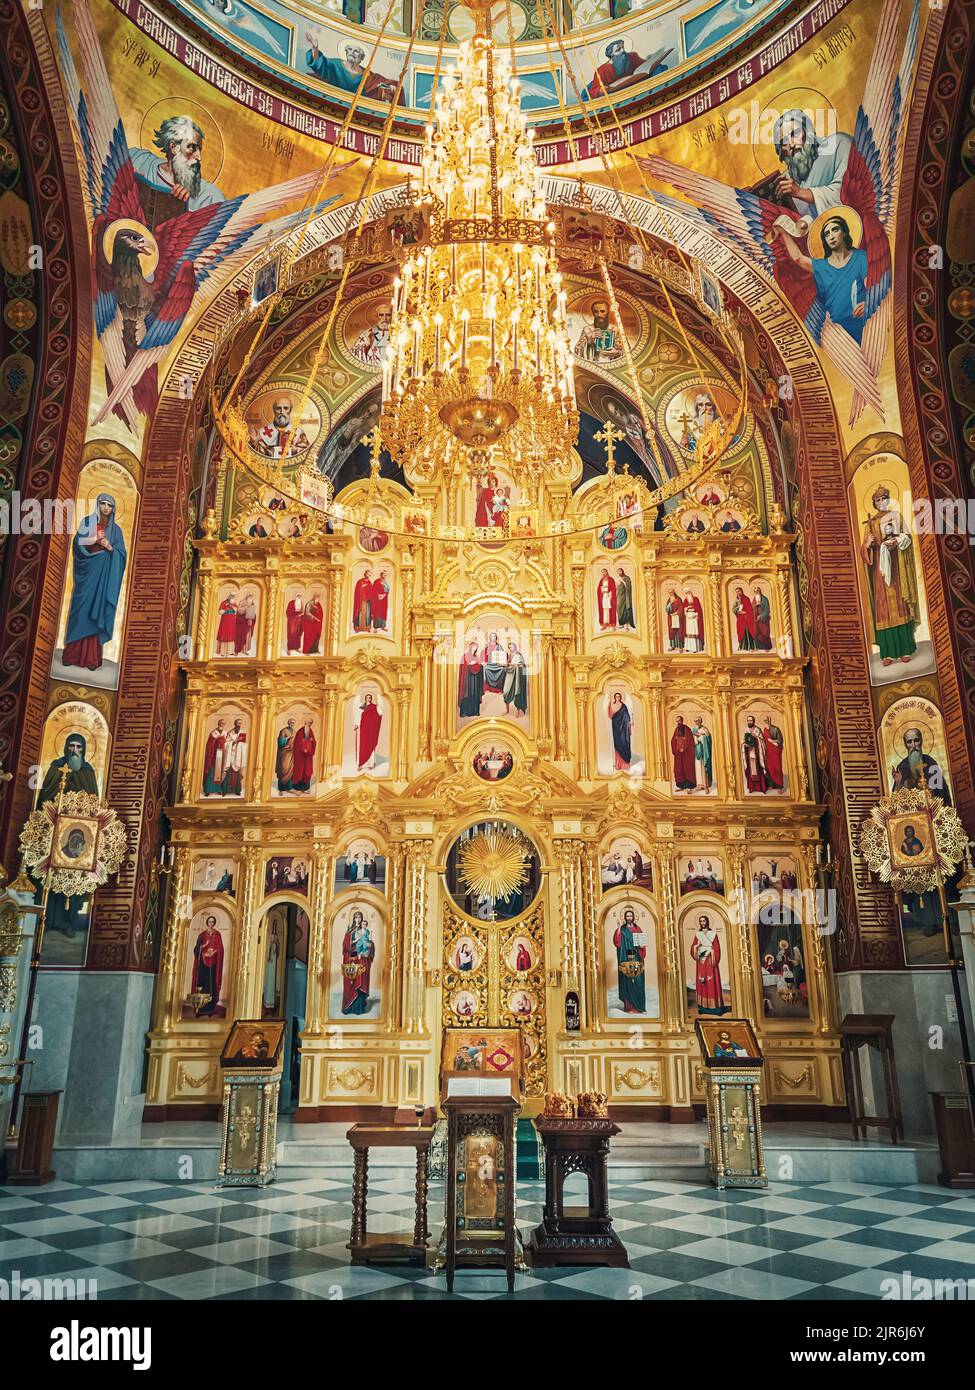 L'altare e l'interno dipinto del Monastero dei Curchi. Lampadario dorato sospeso con luci accese. Diverse icone di santi come tradi Foto Stock